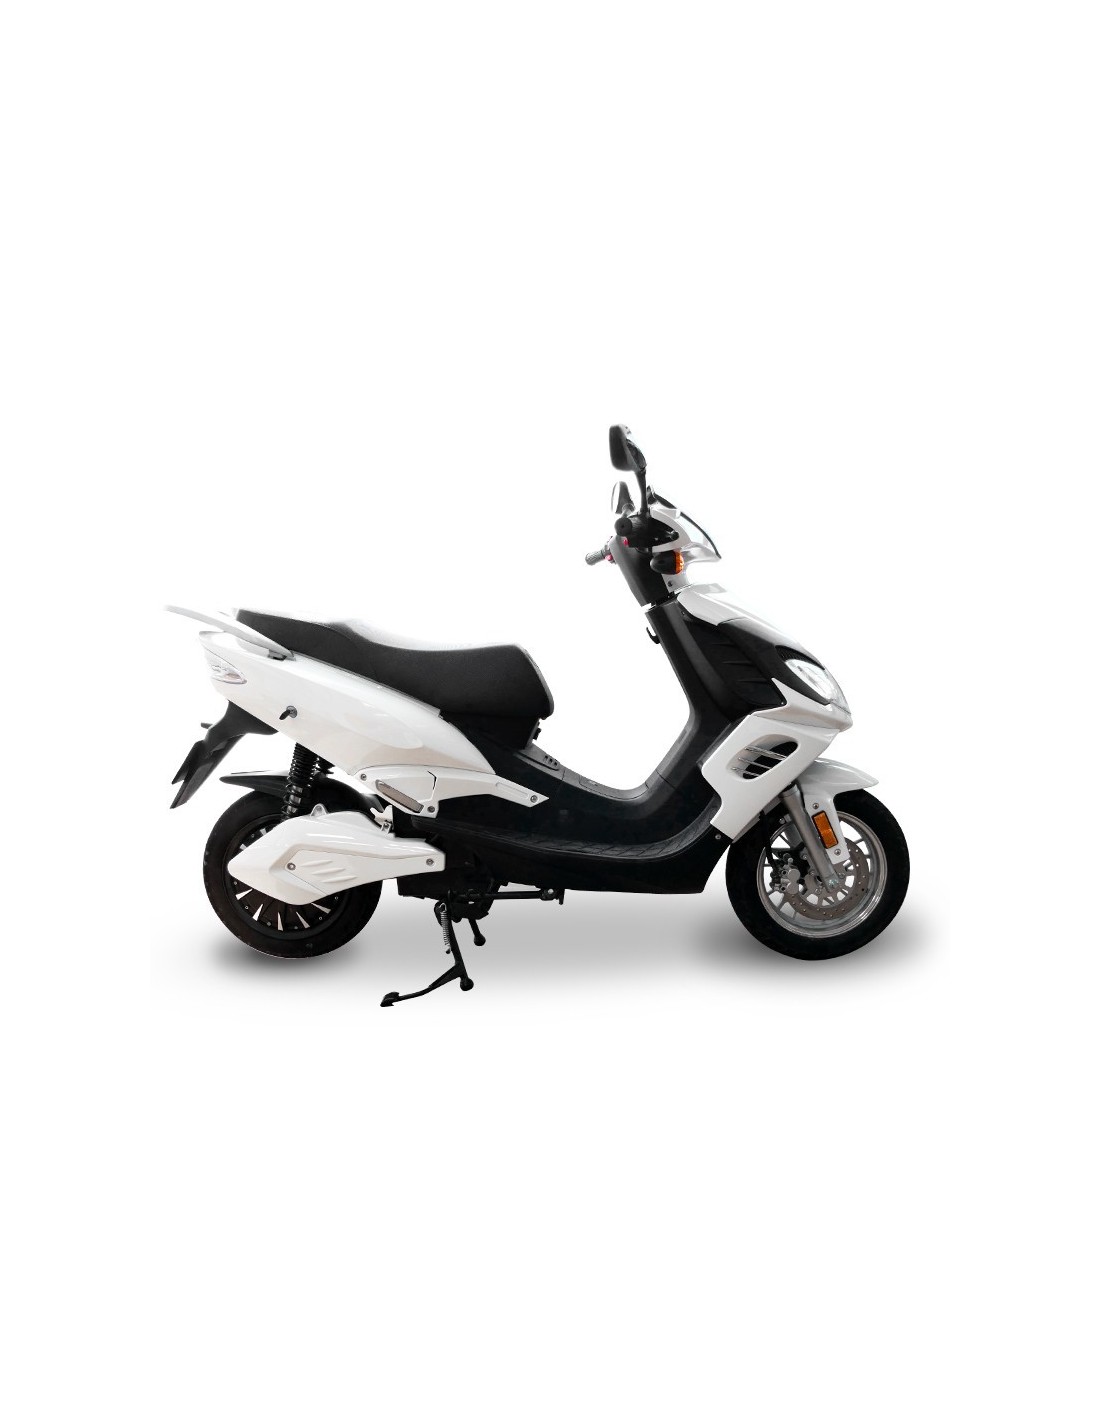 E-stock : le scooter électrique puissant